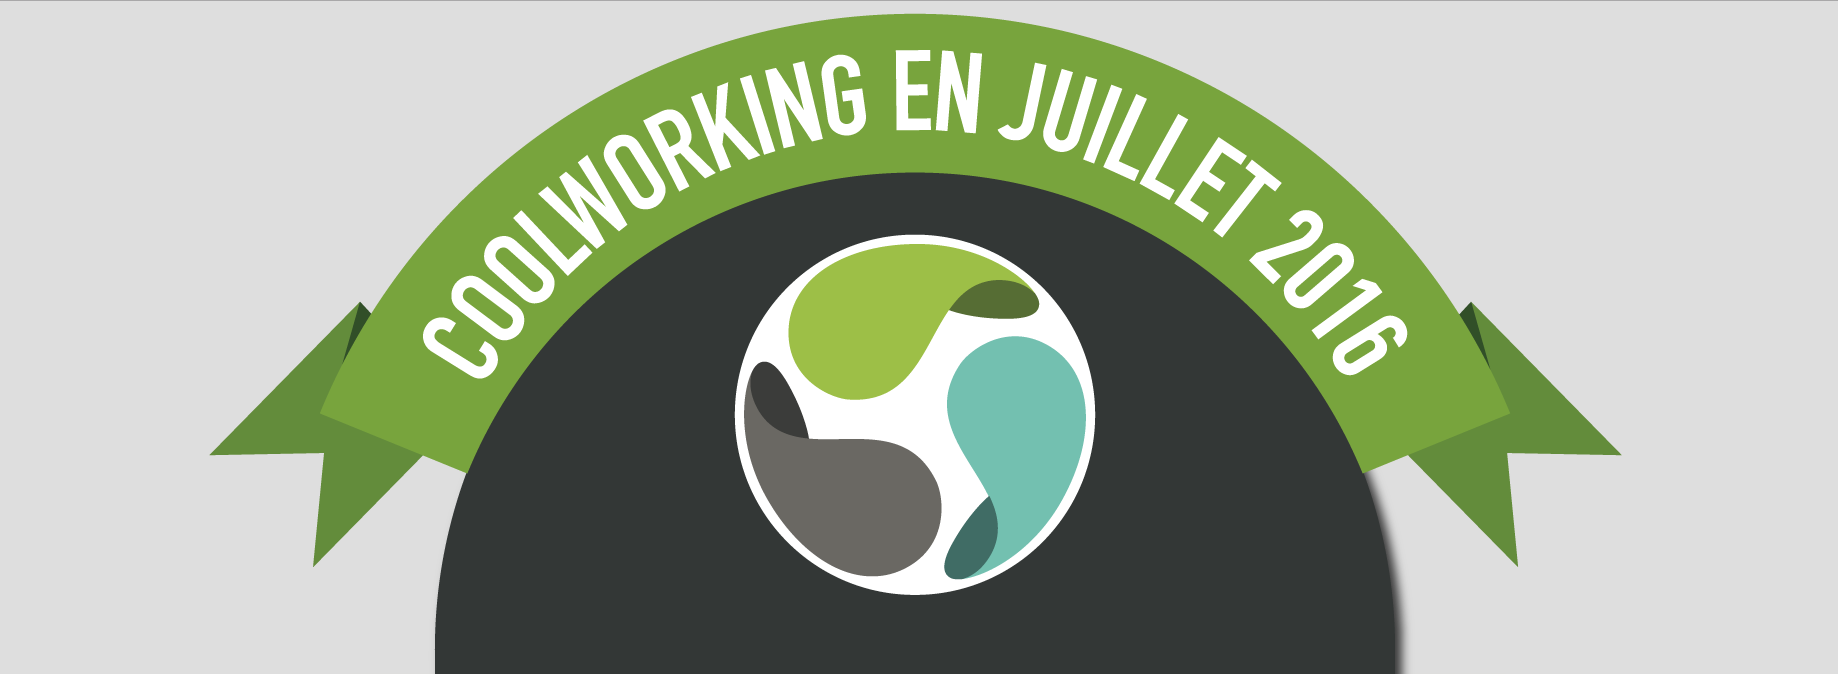 Coolworking - espace de coworking à Bordeaux - Bannière infographie - Qui sont les coworkers en Juillet 2016